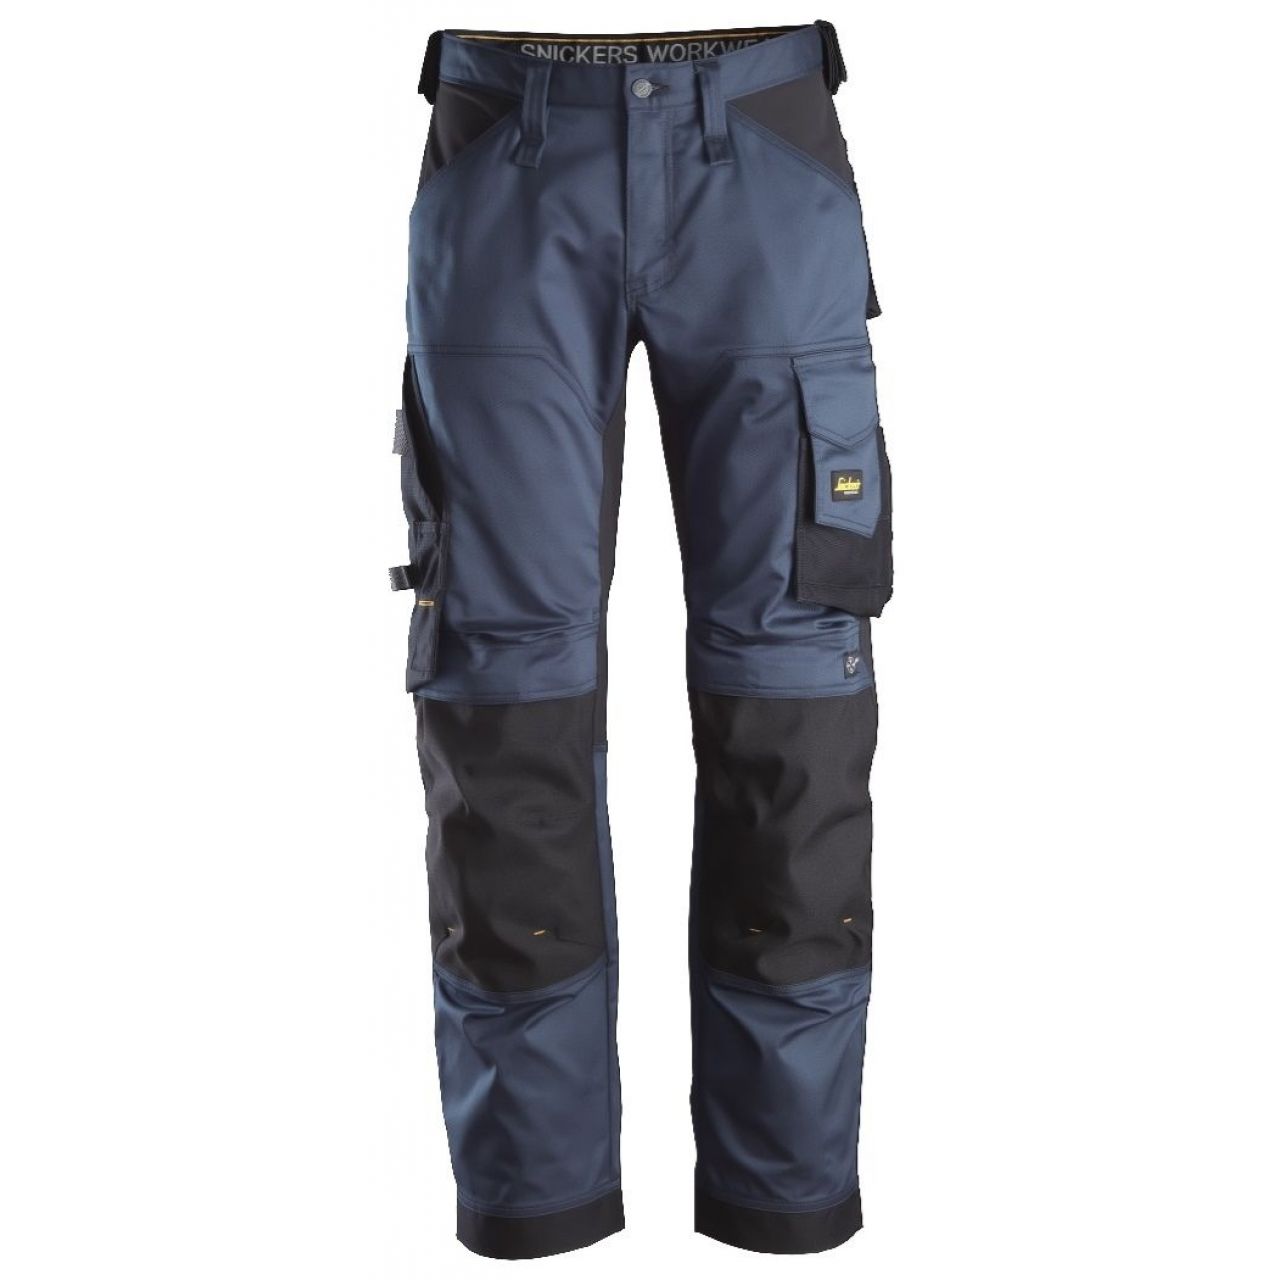 Pantalon elastico ajuste holgado AllroundWork azul marino-negro talla 050